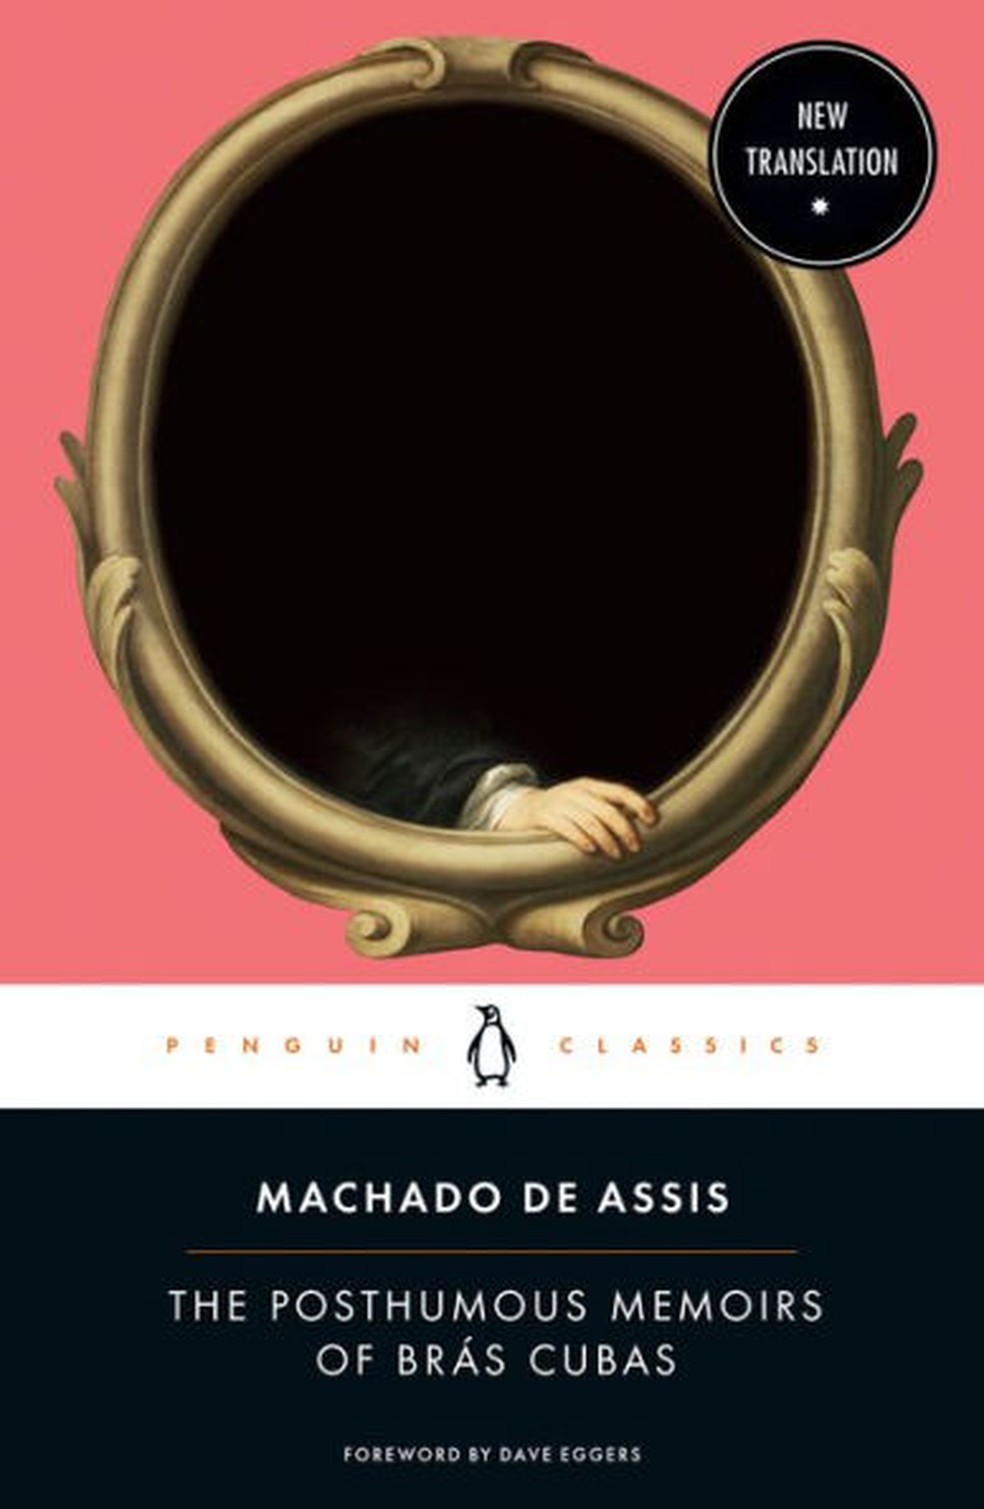 Memórias Póstumas de Brás Cubas' de Machado de Assis: resumo e análise